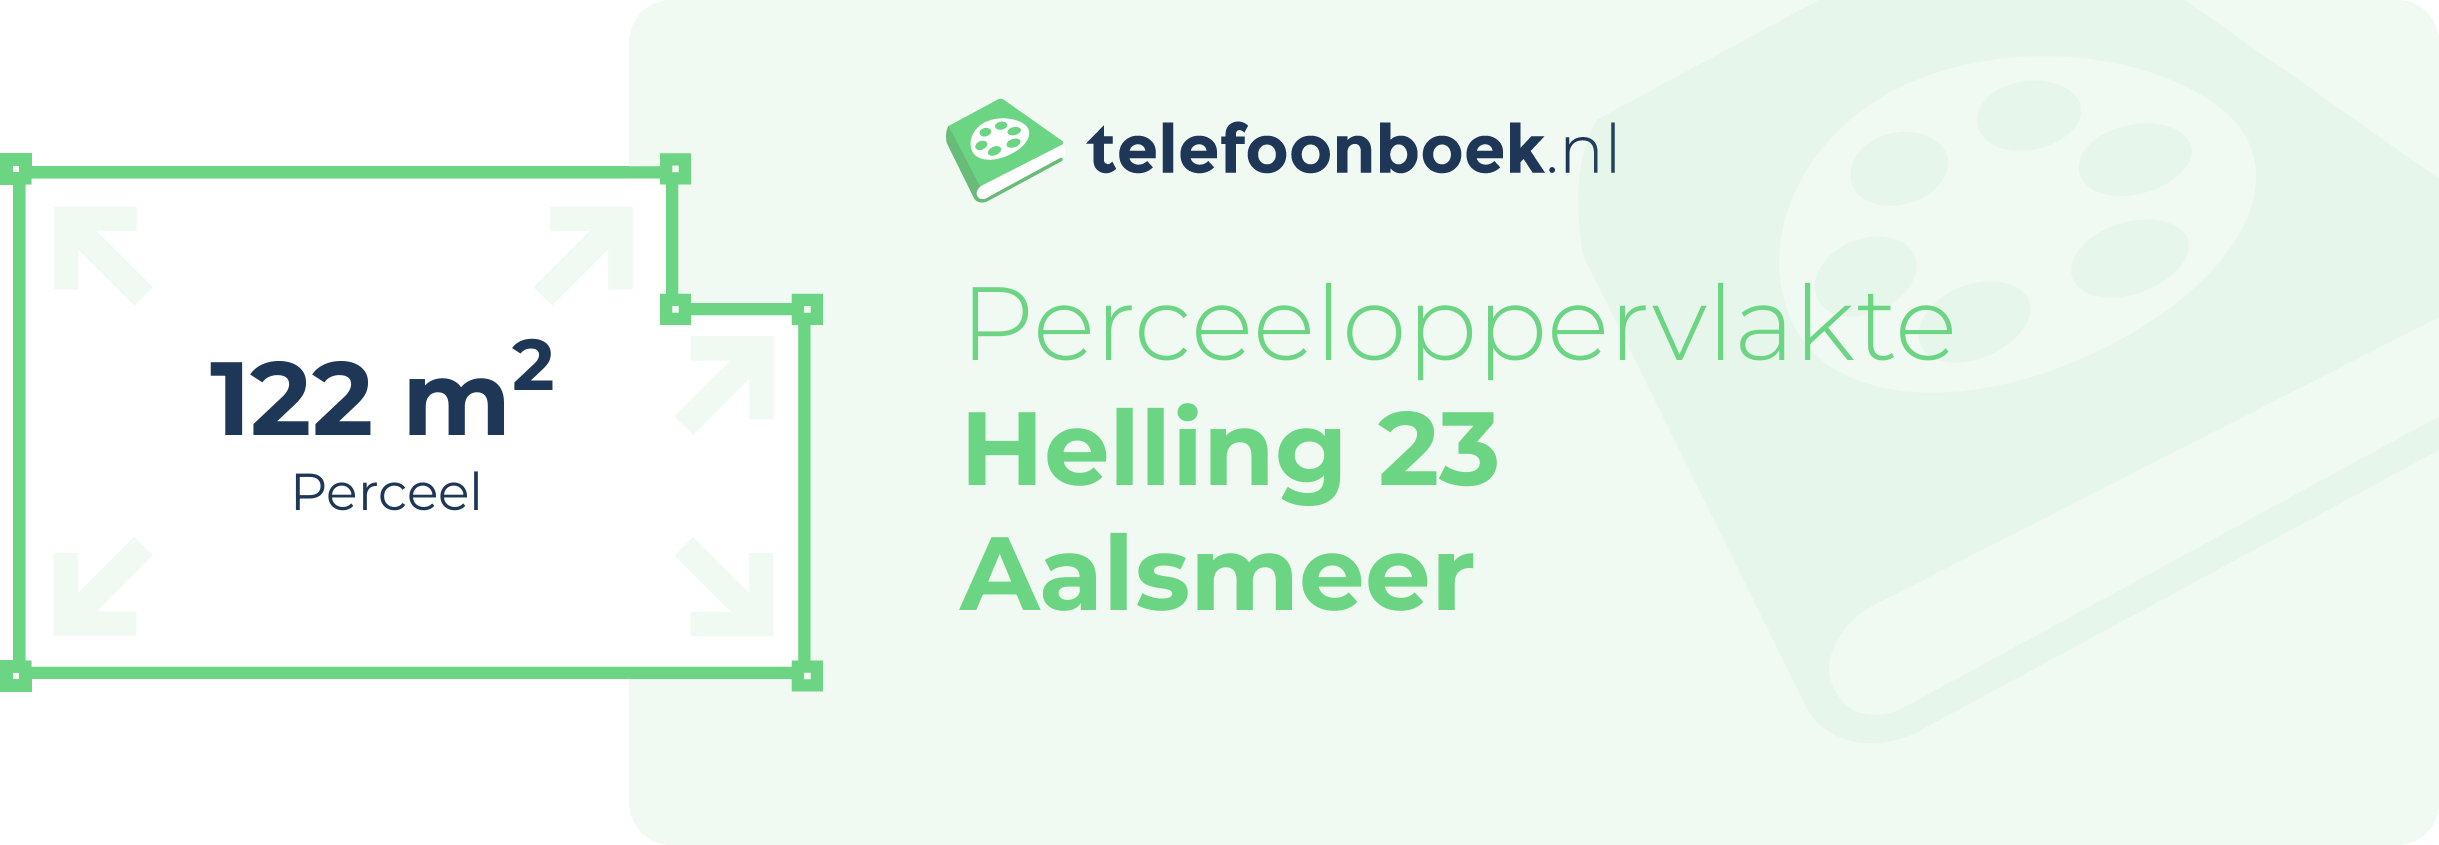 Perceeloppervlakte Helling 23 Aalsmeer